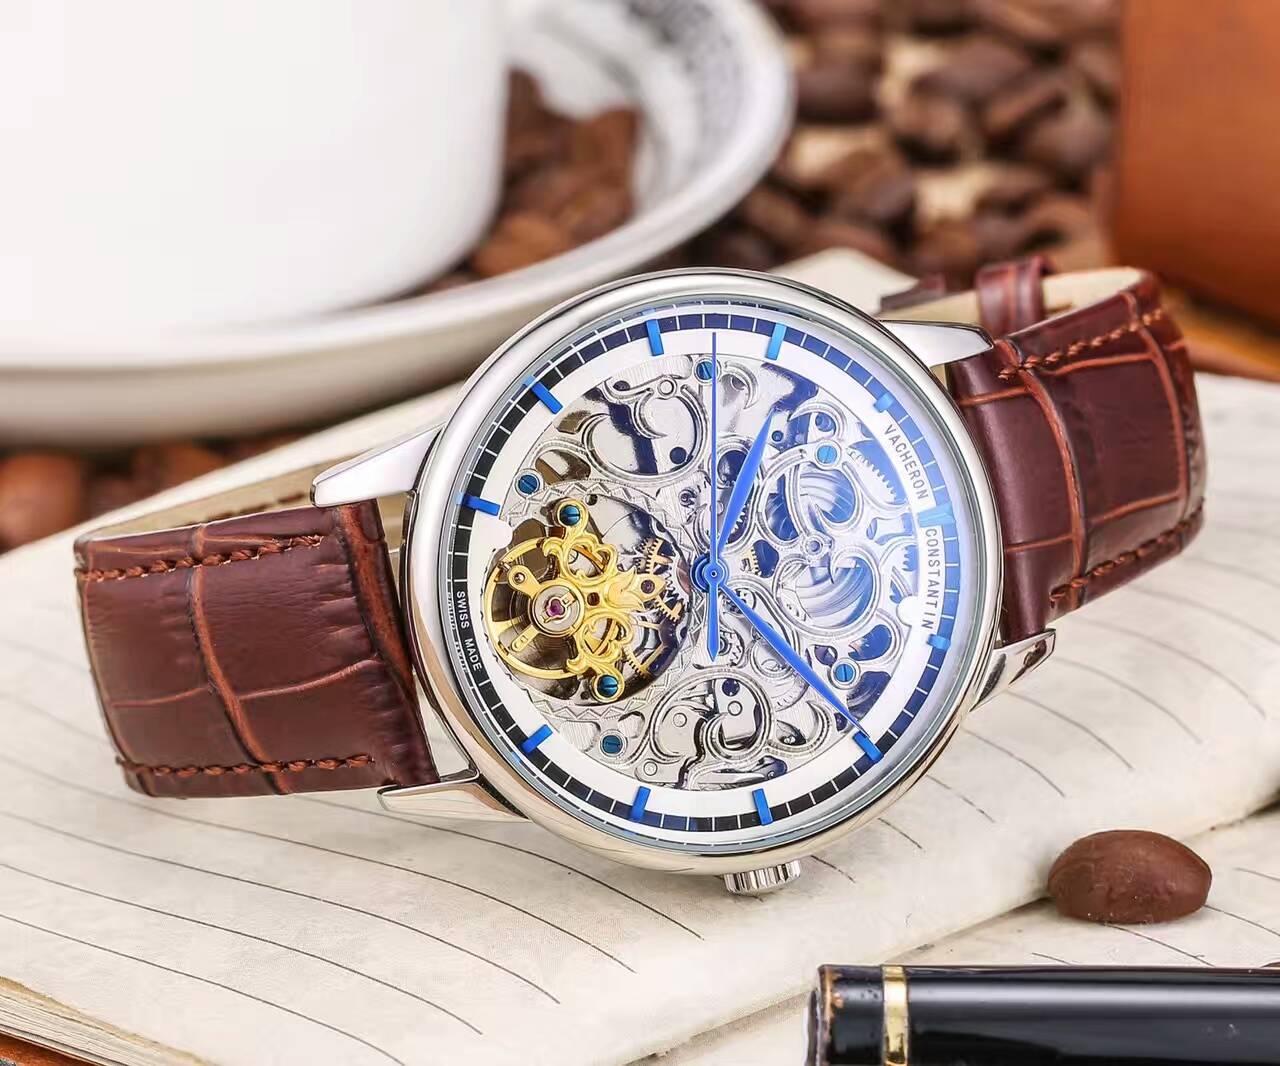 江詩丹頓 頂級機械機芯 礦物質超強鏡面 真牛皮錶帶 直徑42mm 厚13mm 精品男士腕錶